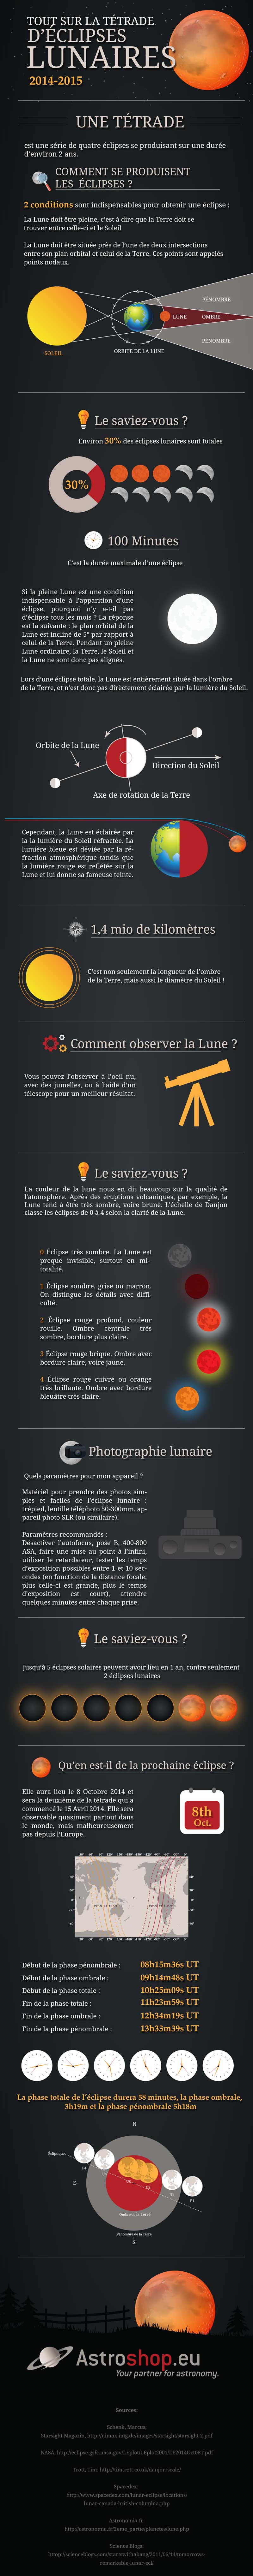 Infographie eclipses lunaires